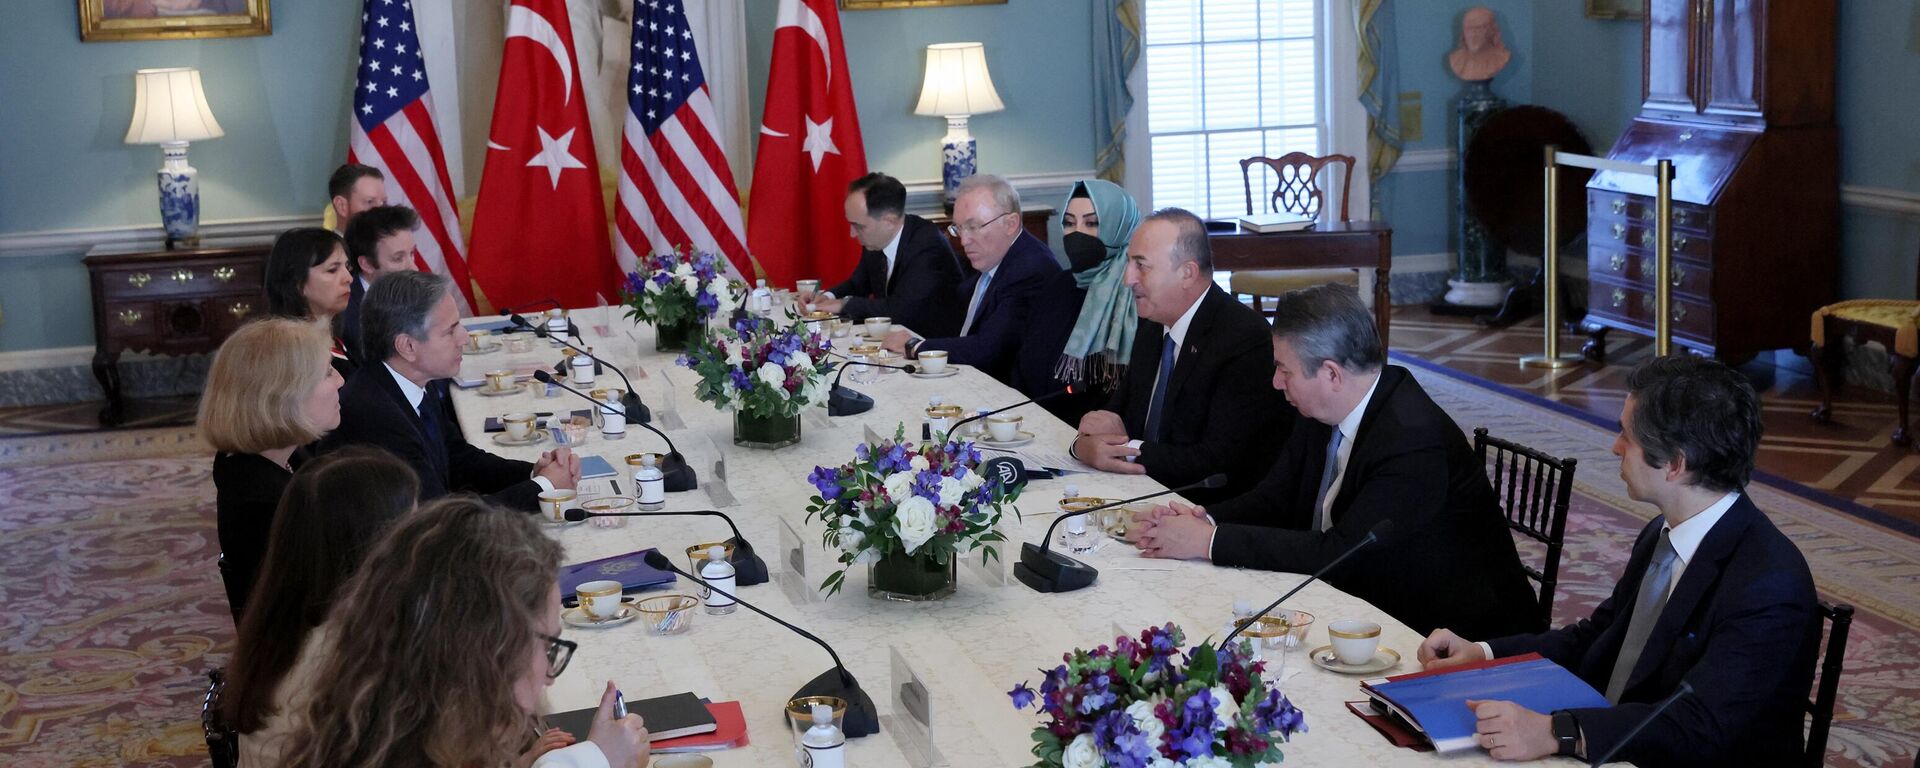 El secretario de Estado estadounidense Antony Blinken se reúne con el ministro de Asuntos Exteriores turco Mevlut Cavusoglu en el Departamento de Estado en Washington, el 18 de enero de 2023  - Sputnik Mundo, 1920, 19.01.2023